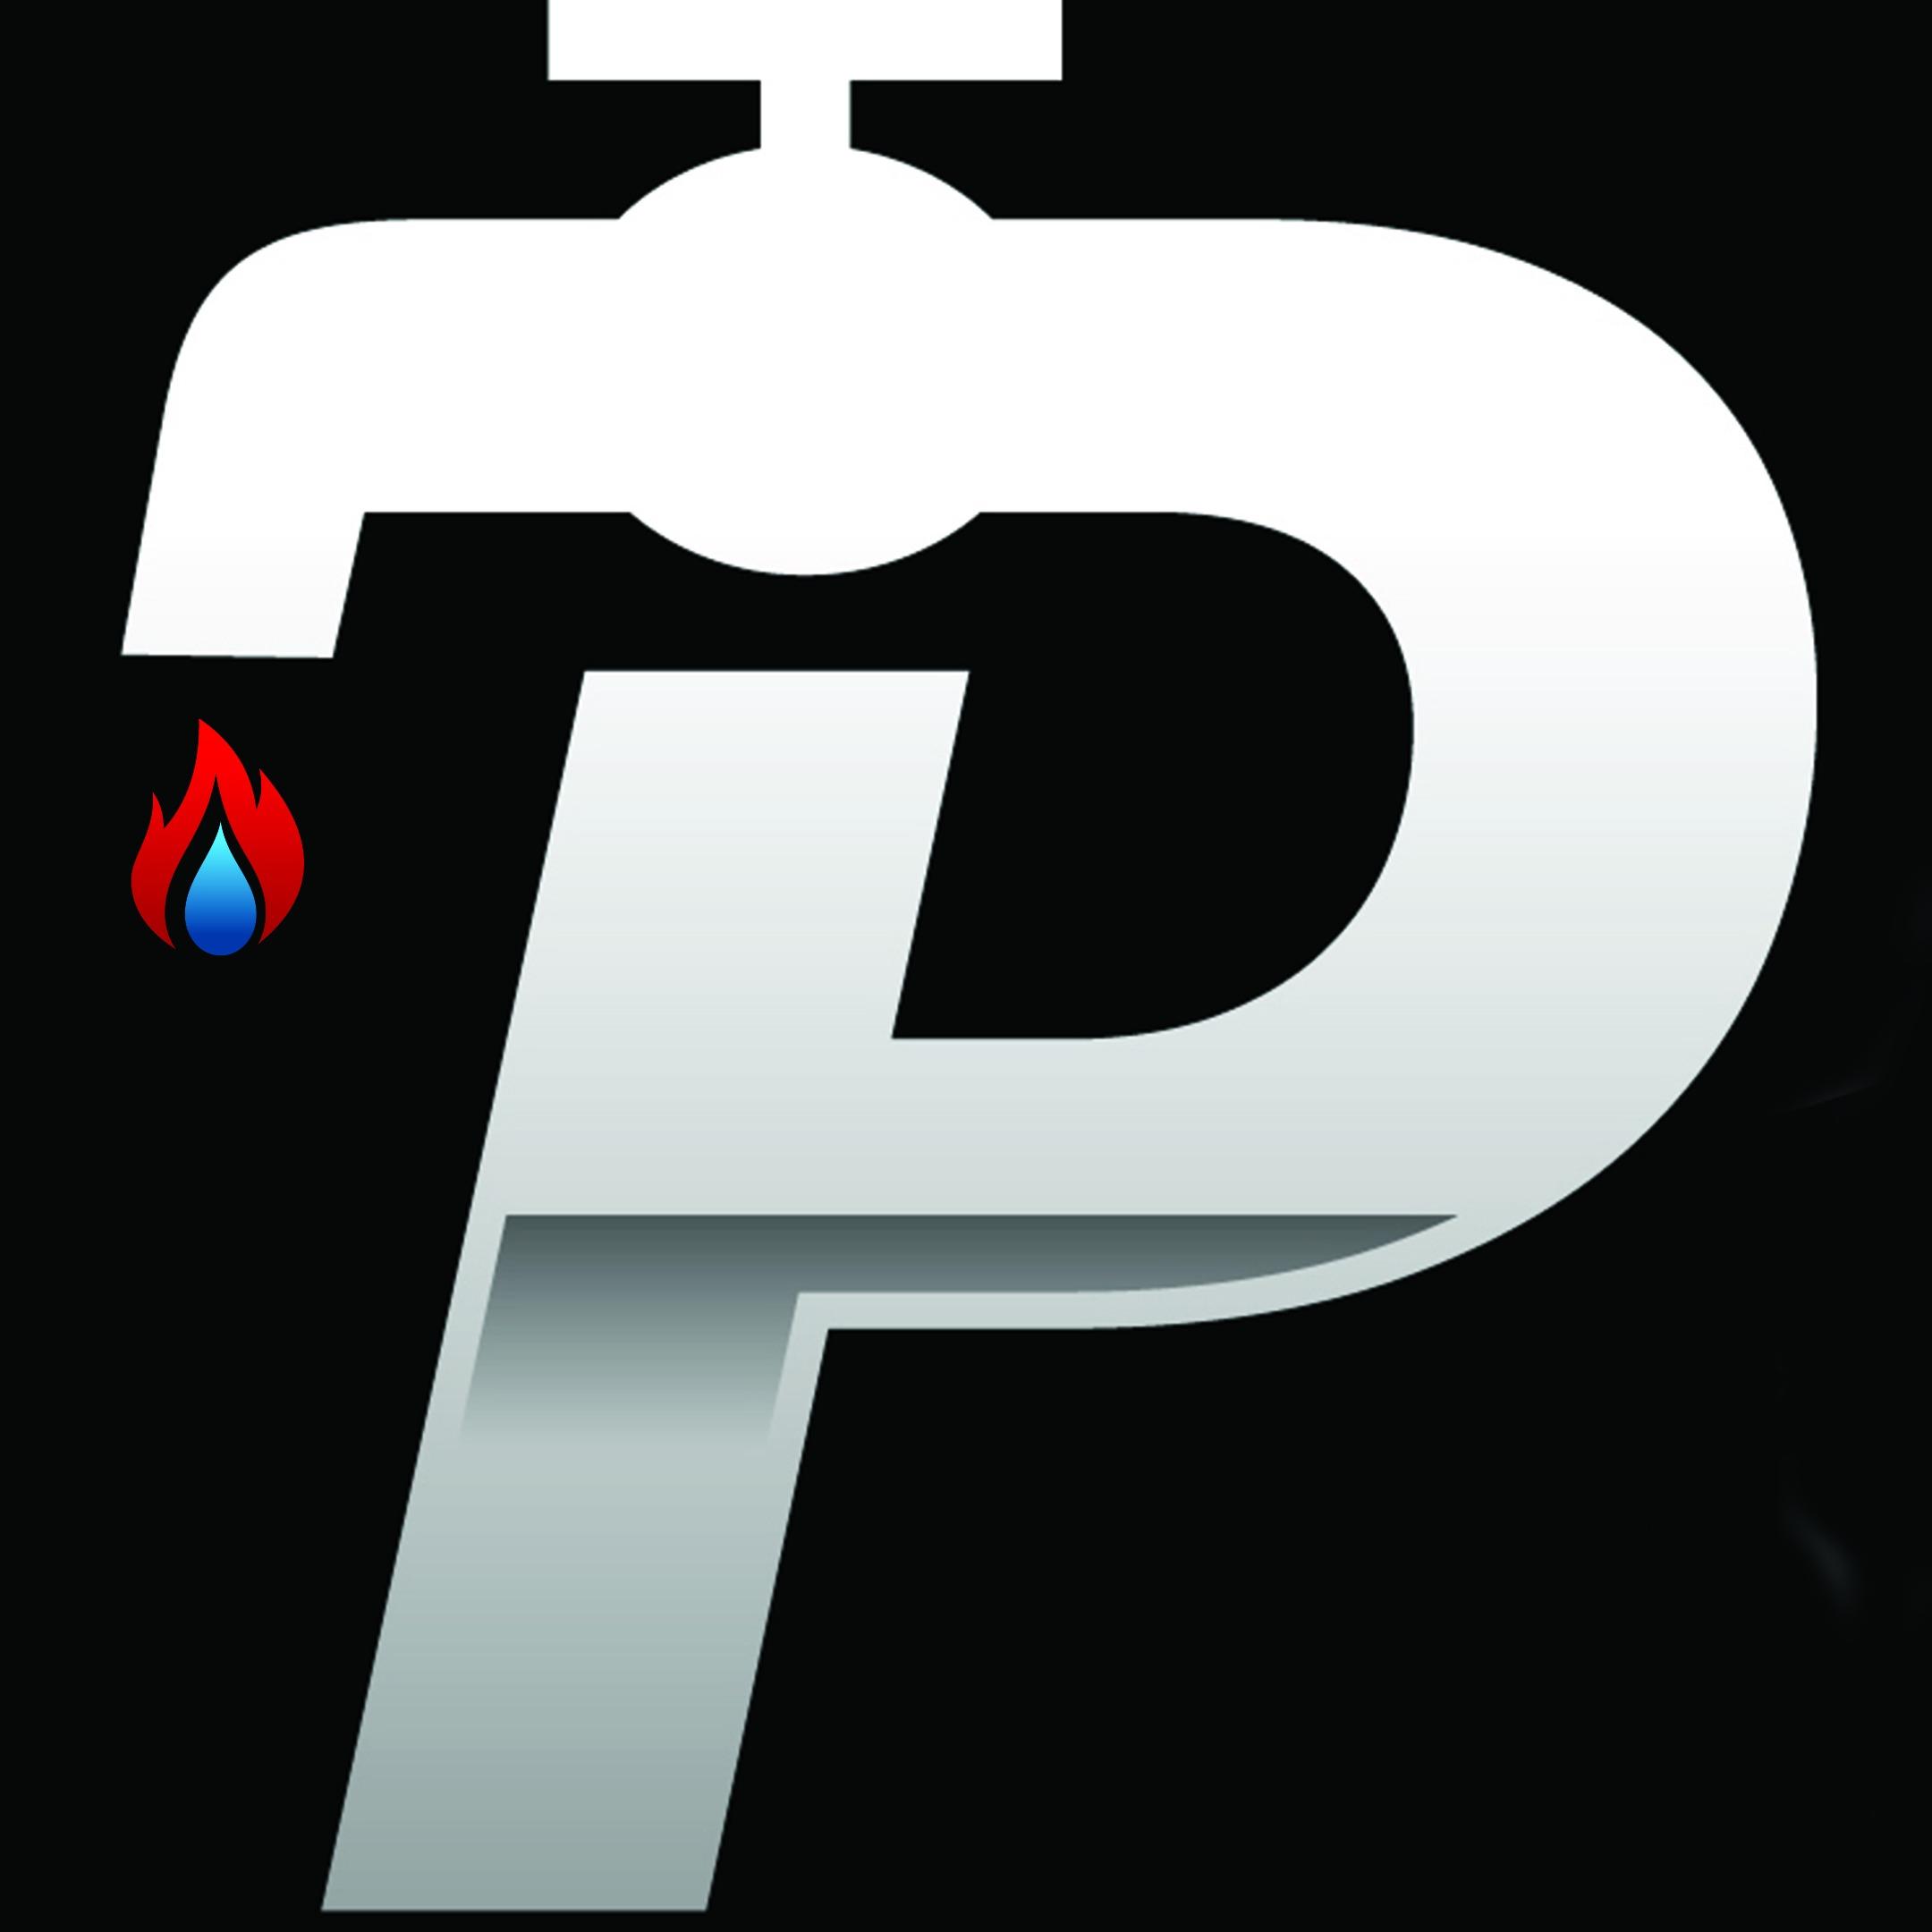 Patriot Plumbing, Heating & Cooling Inc. Logo